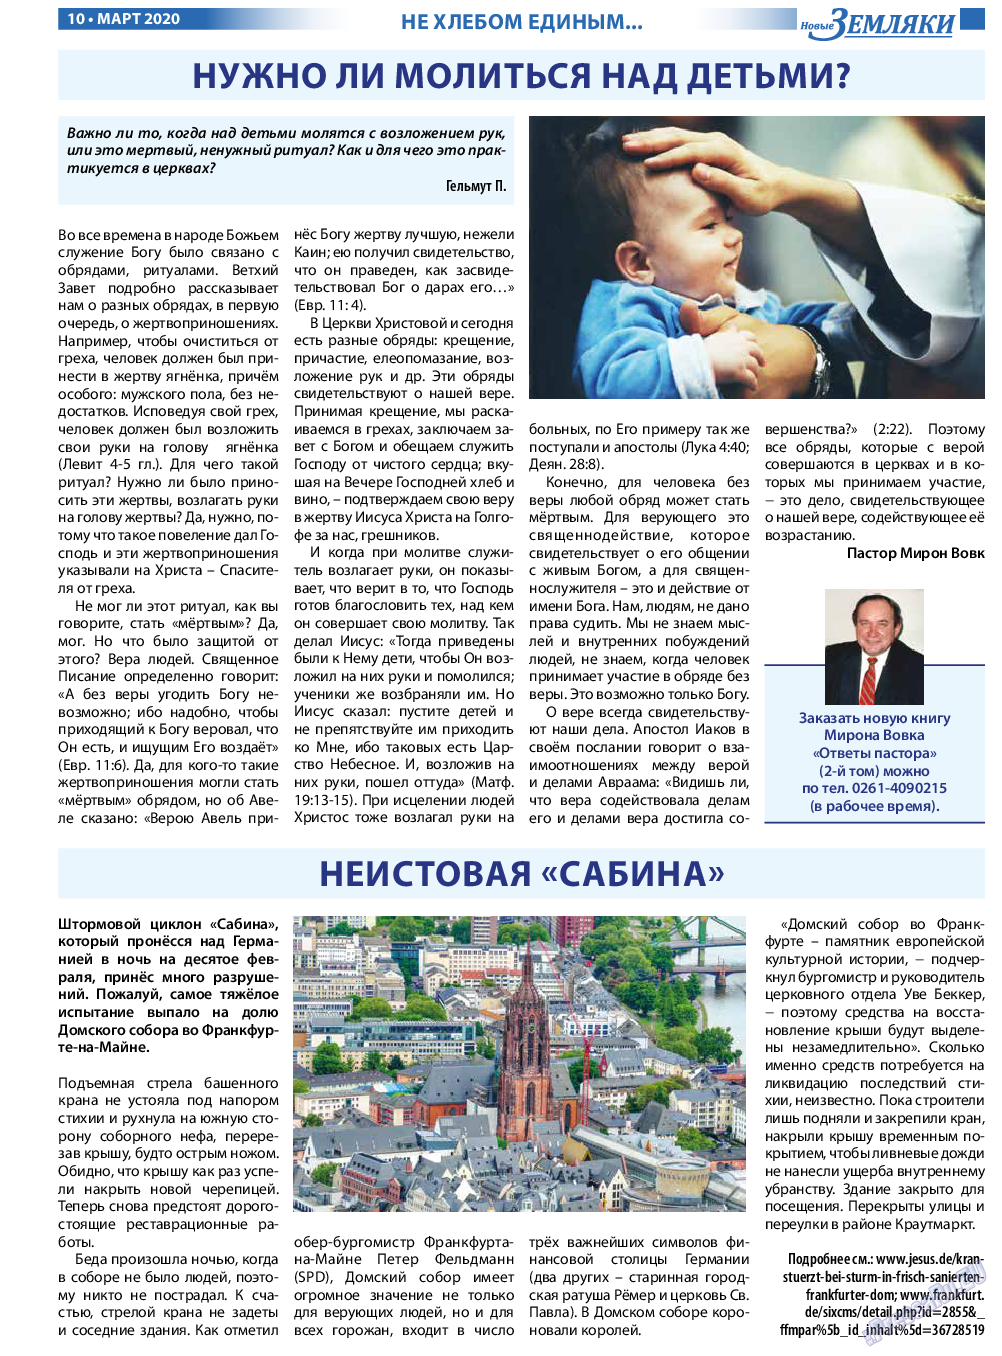 Новые Земляки (газета). 2020 год, номер 3, стр. 10